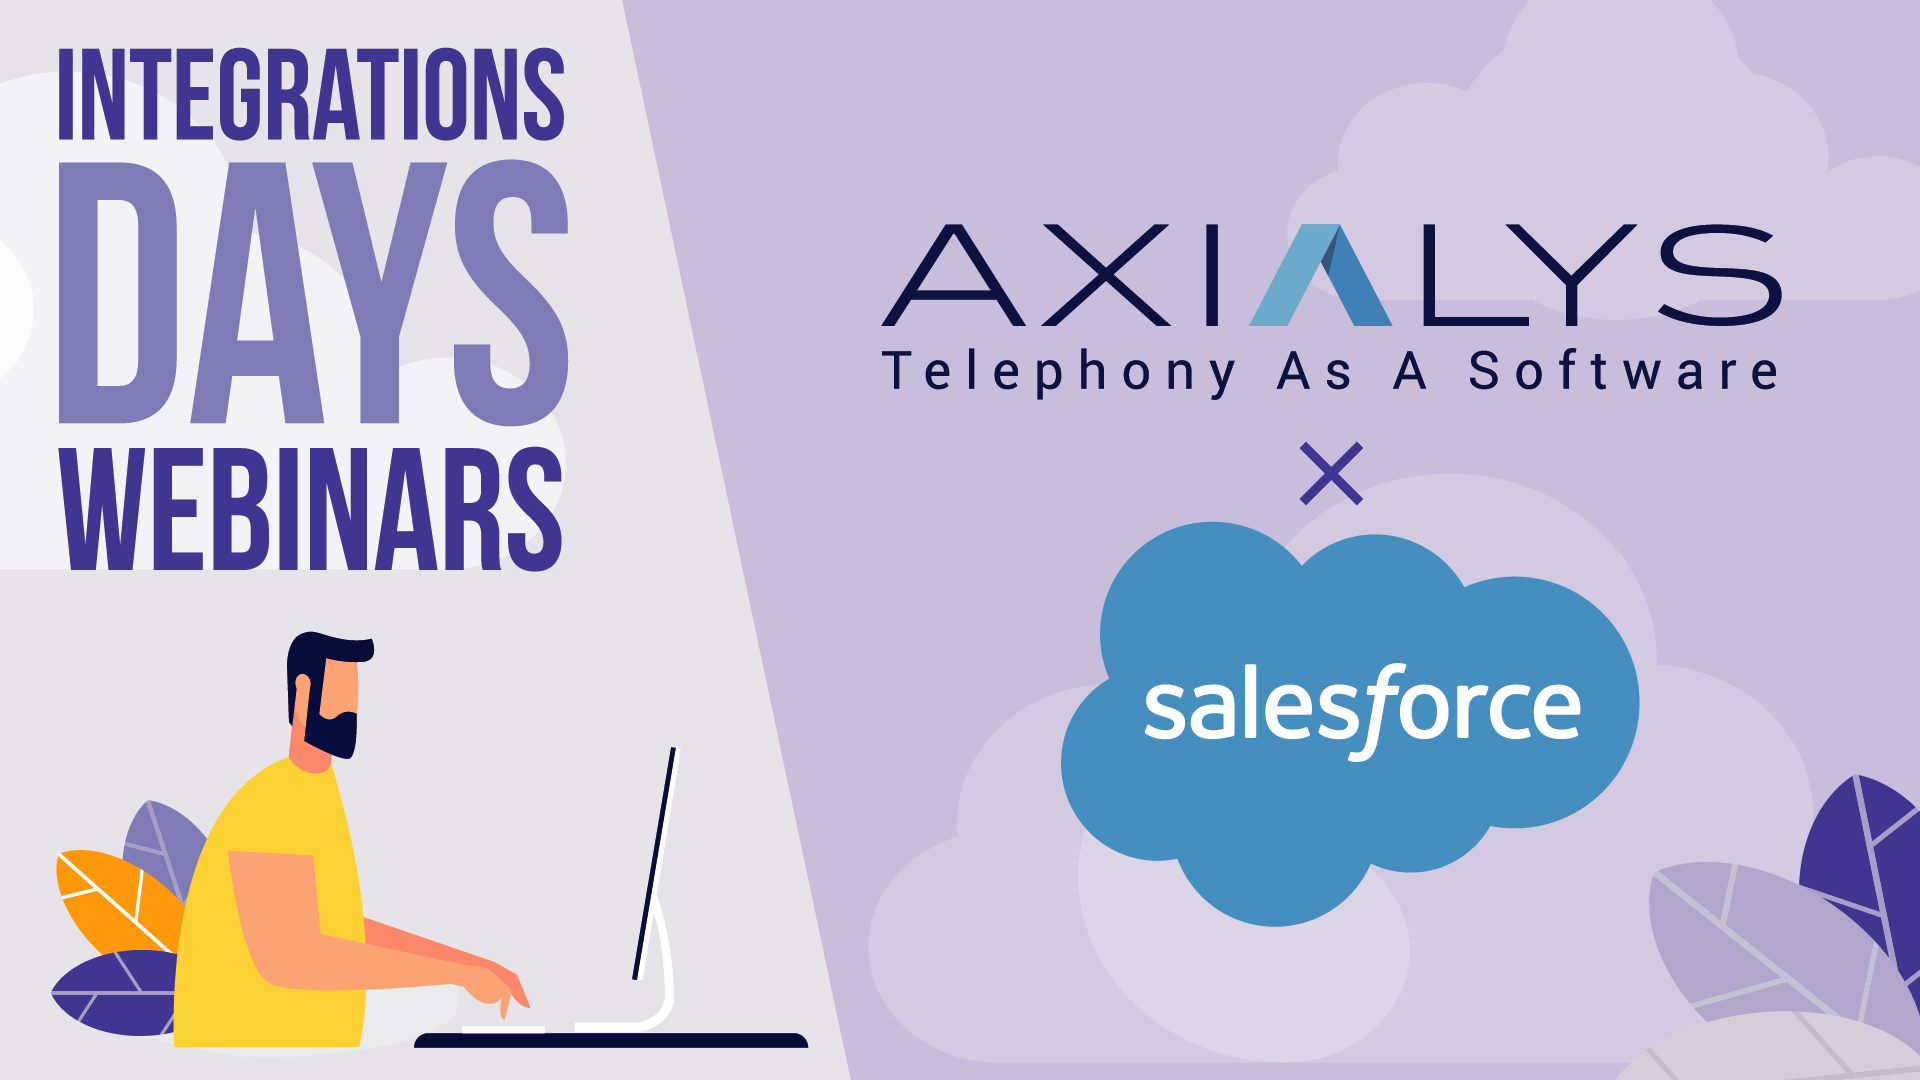 Découvrez comment s’intègre la solution Axialys dans Salesforce